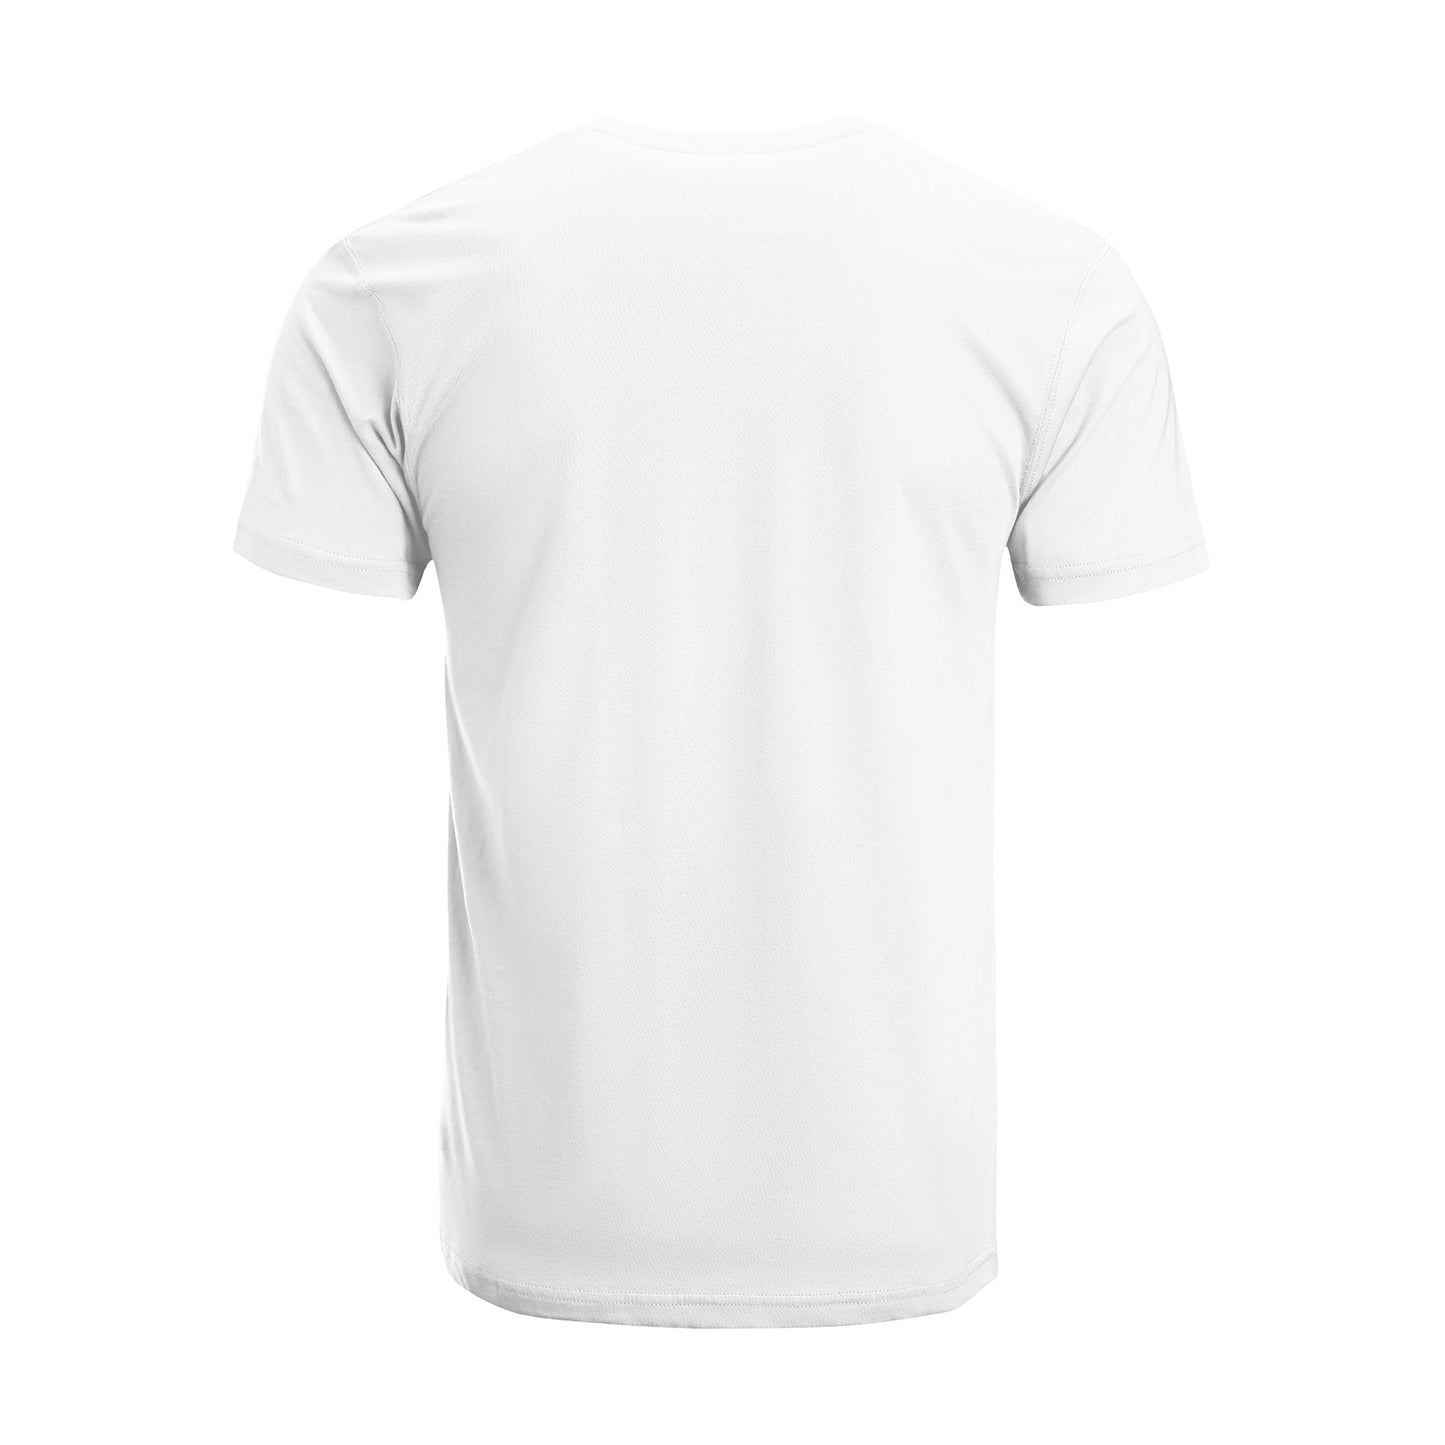 Rapstar T-Shirt DromedarShop.com Online Boutique